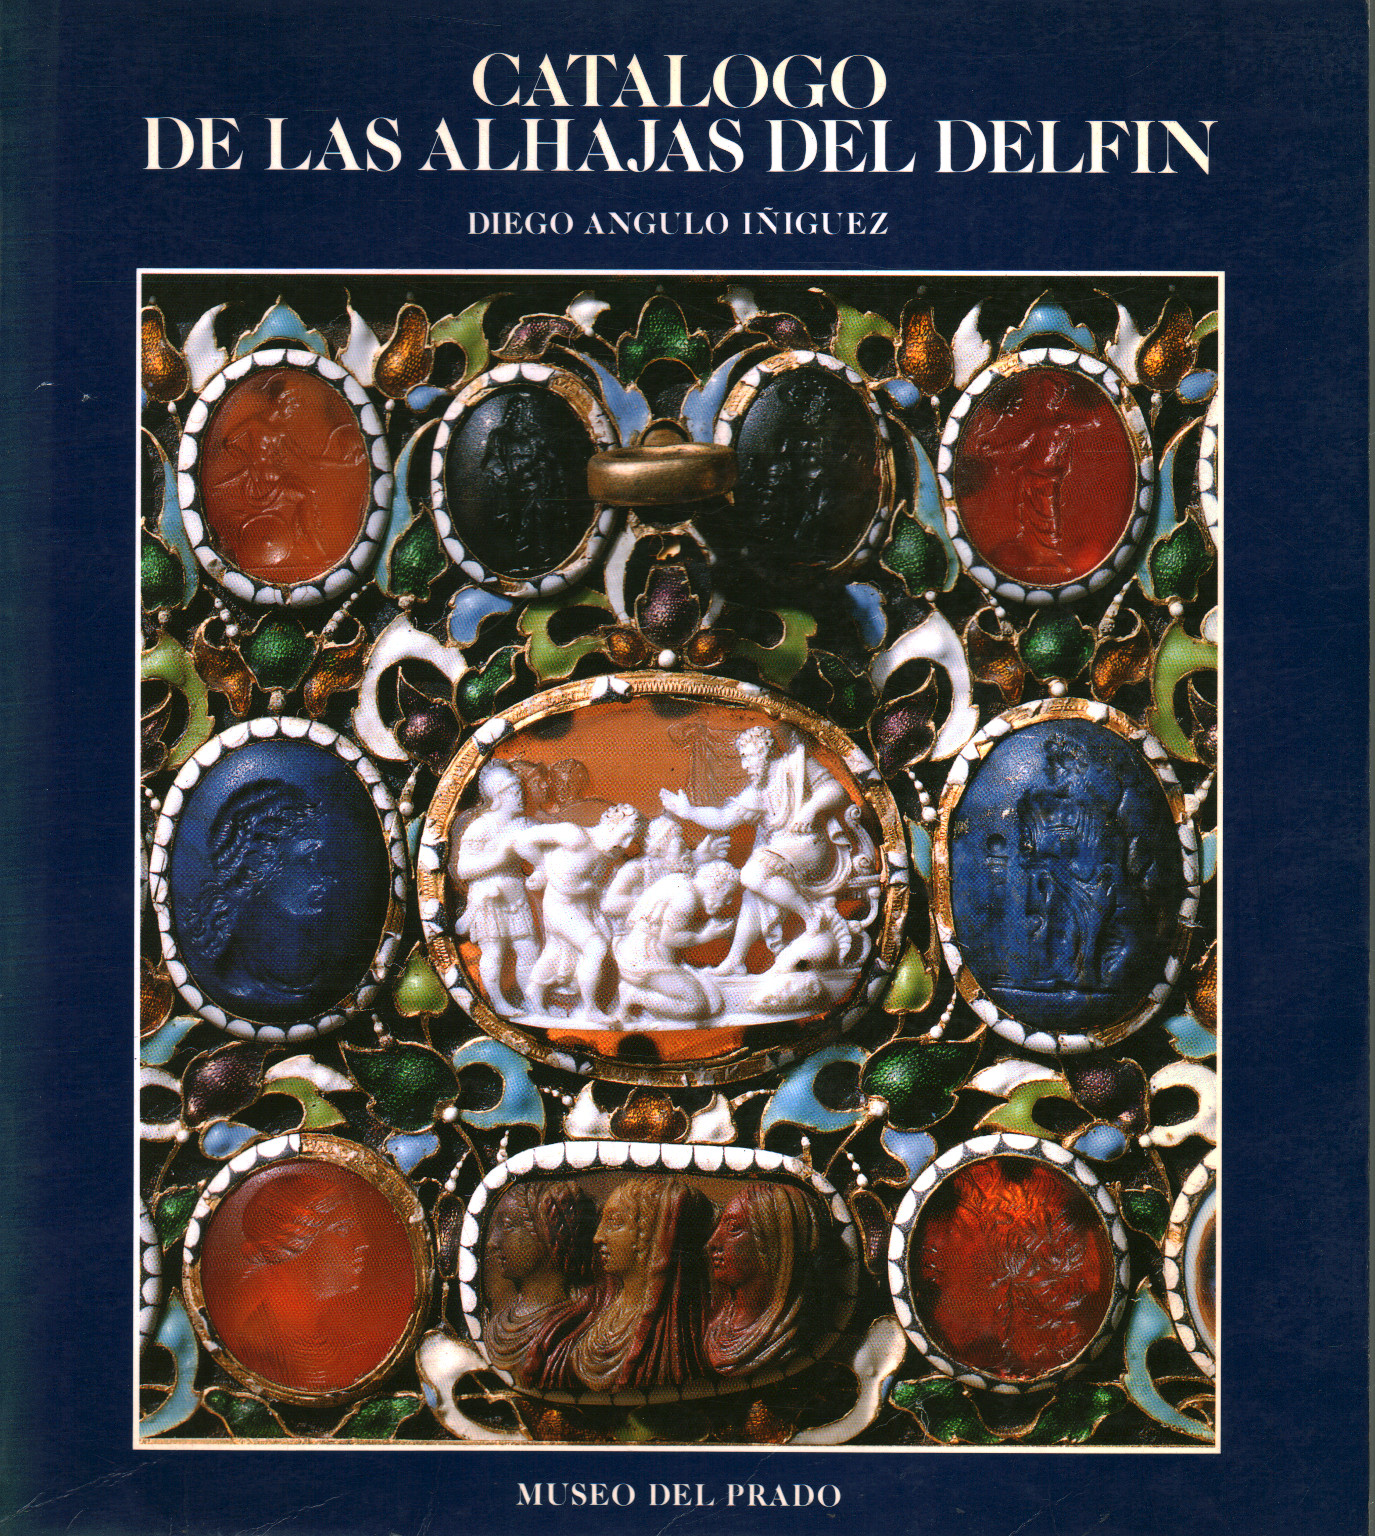 Catalog de las Alhajas del Delfin, s.a.